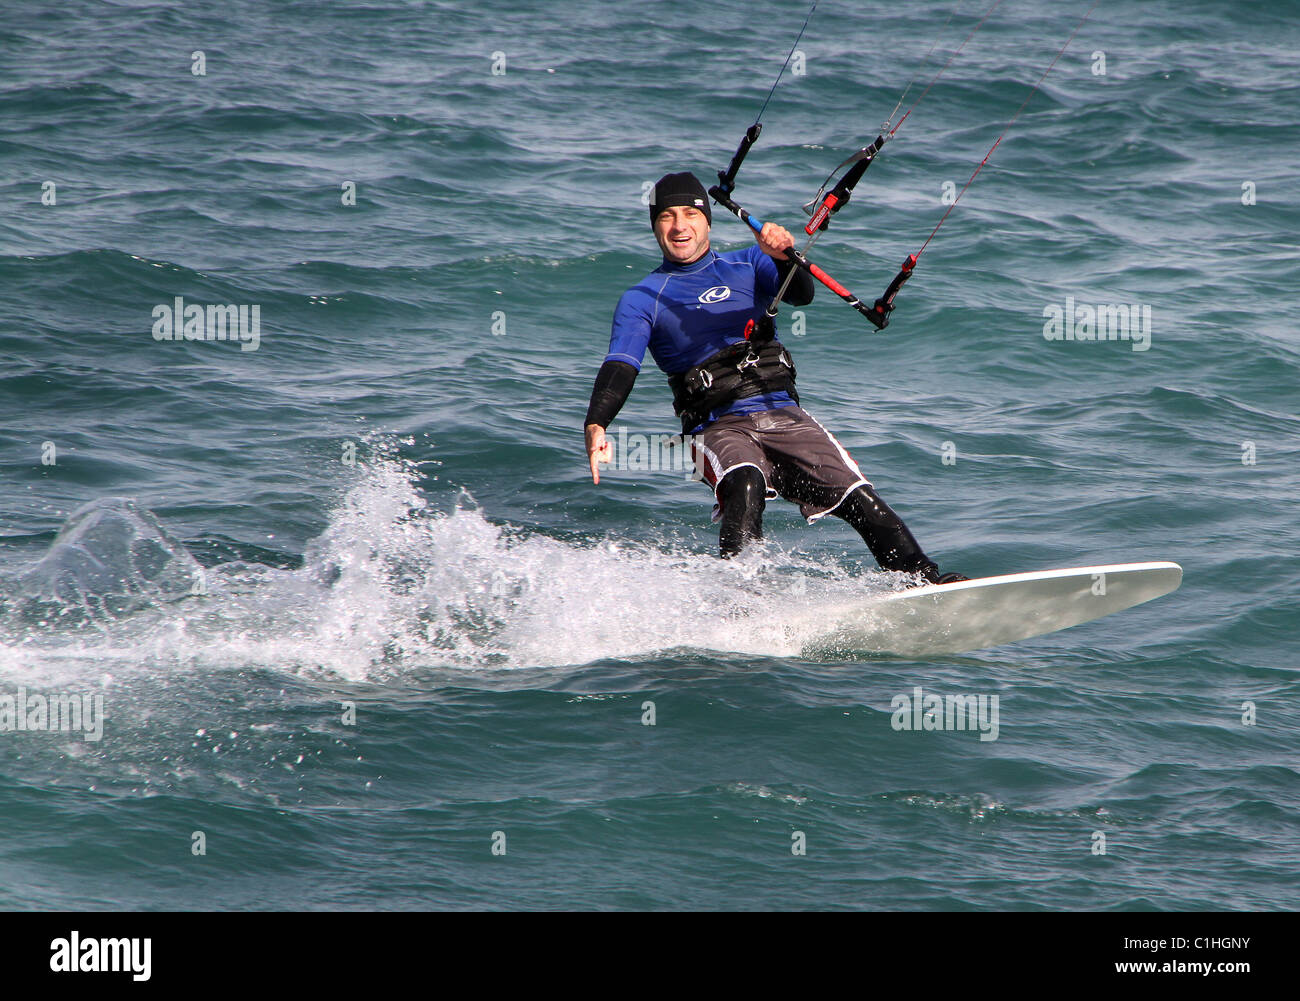 Vento Kite surfer in azione. Foto Stock